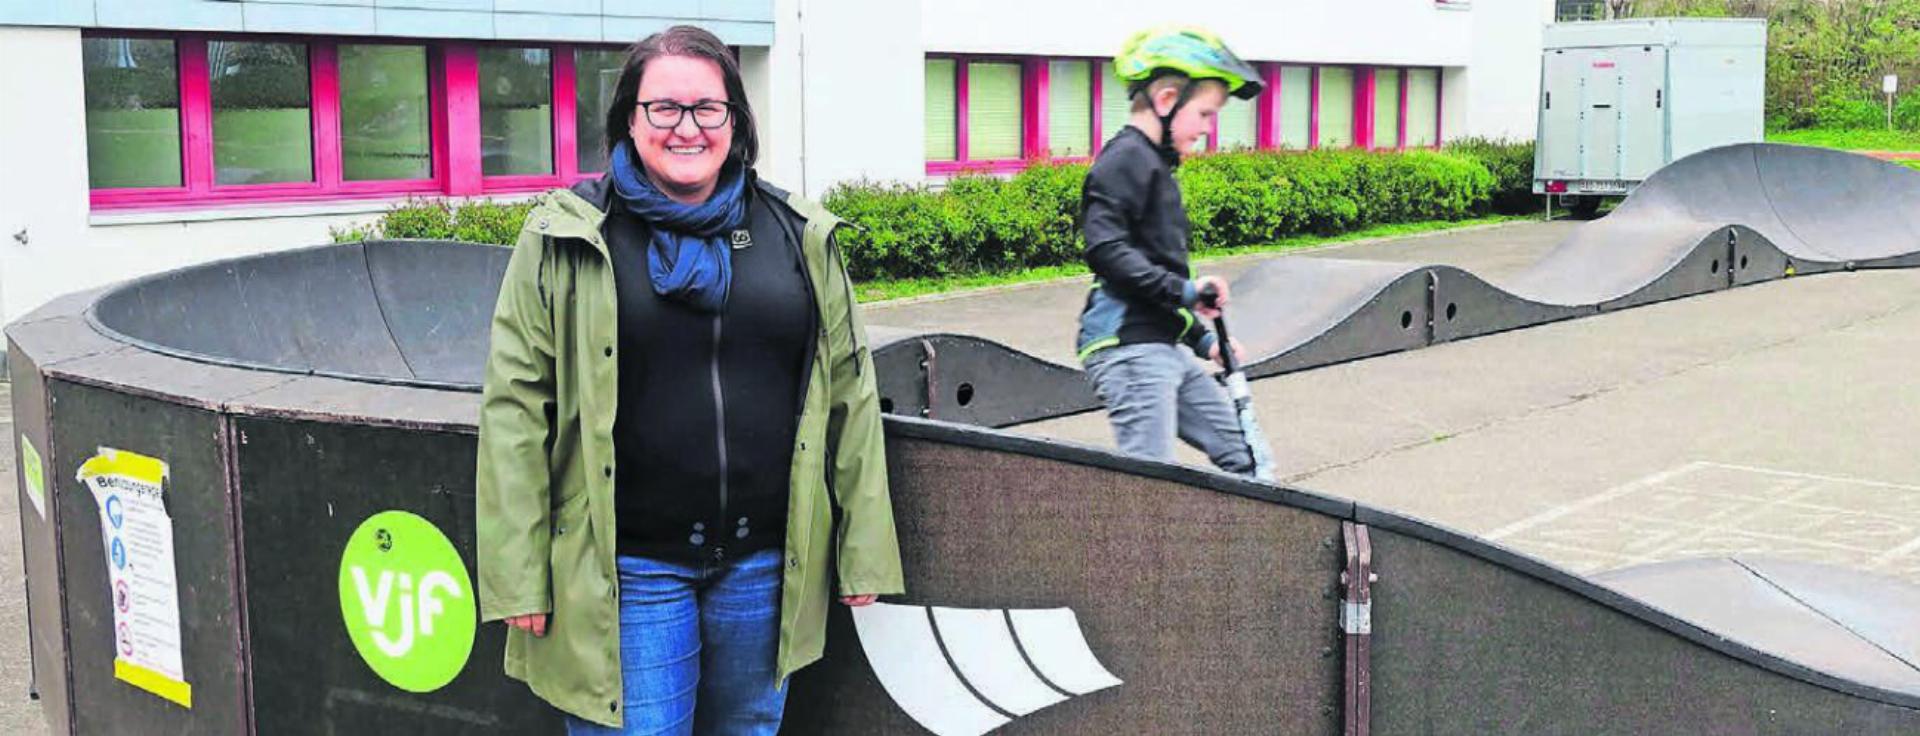 Sabrina Willi, Präsidentin des Vereins für Eltern und Kind in Oberlunkhofen, ist begeistert von den vielen positiven Rückmeldungen zu dem Pumptrack. Bilder: Susanne Schild